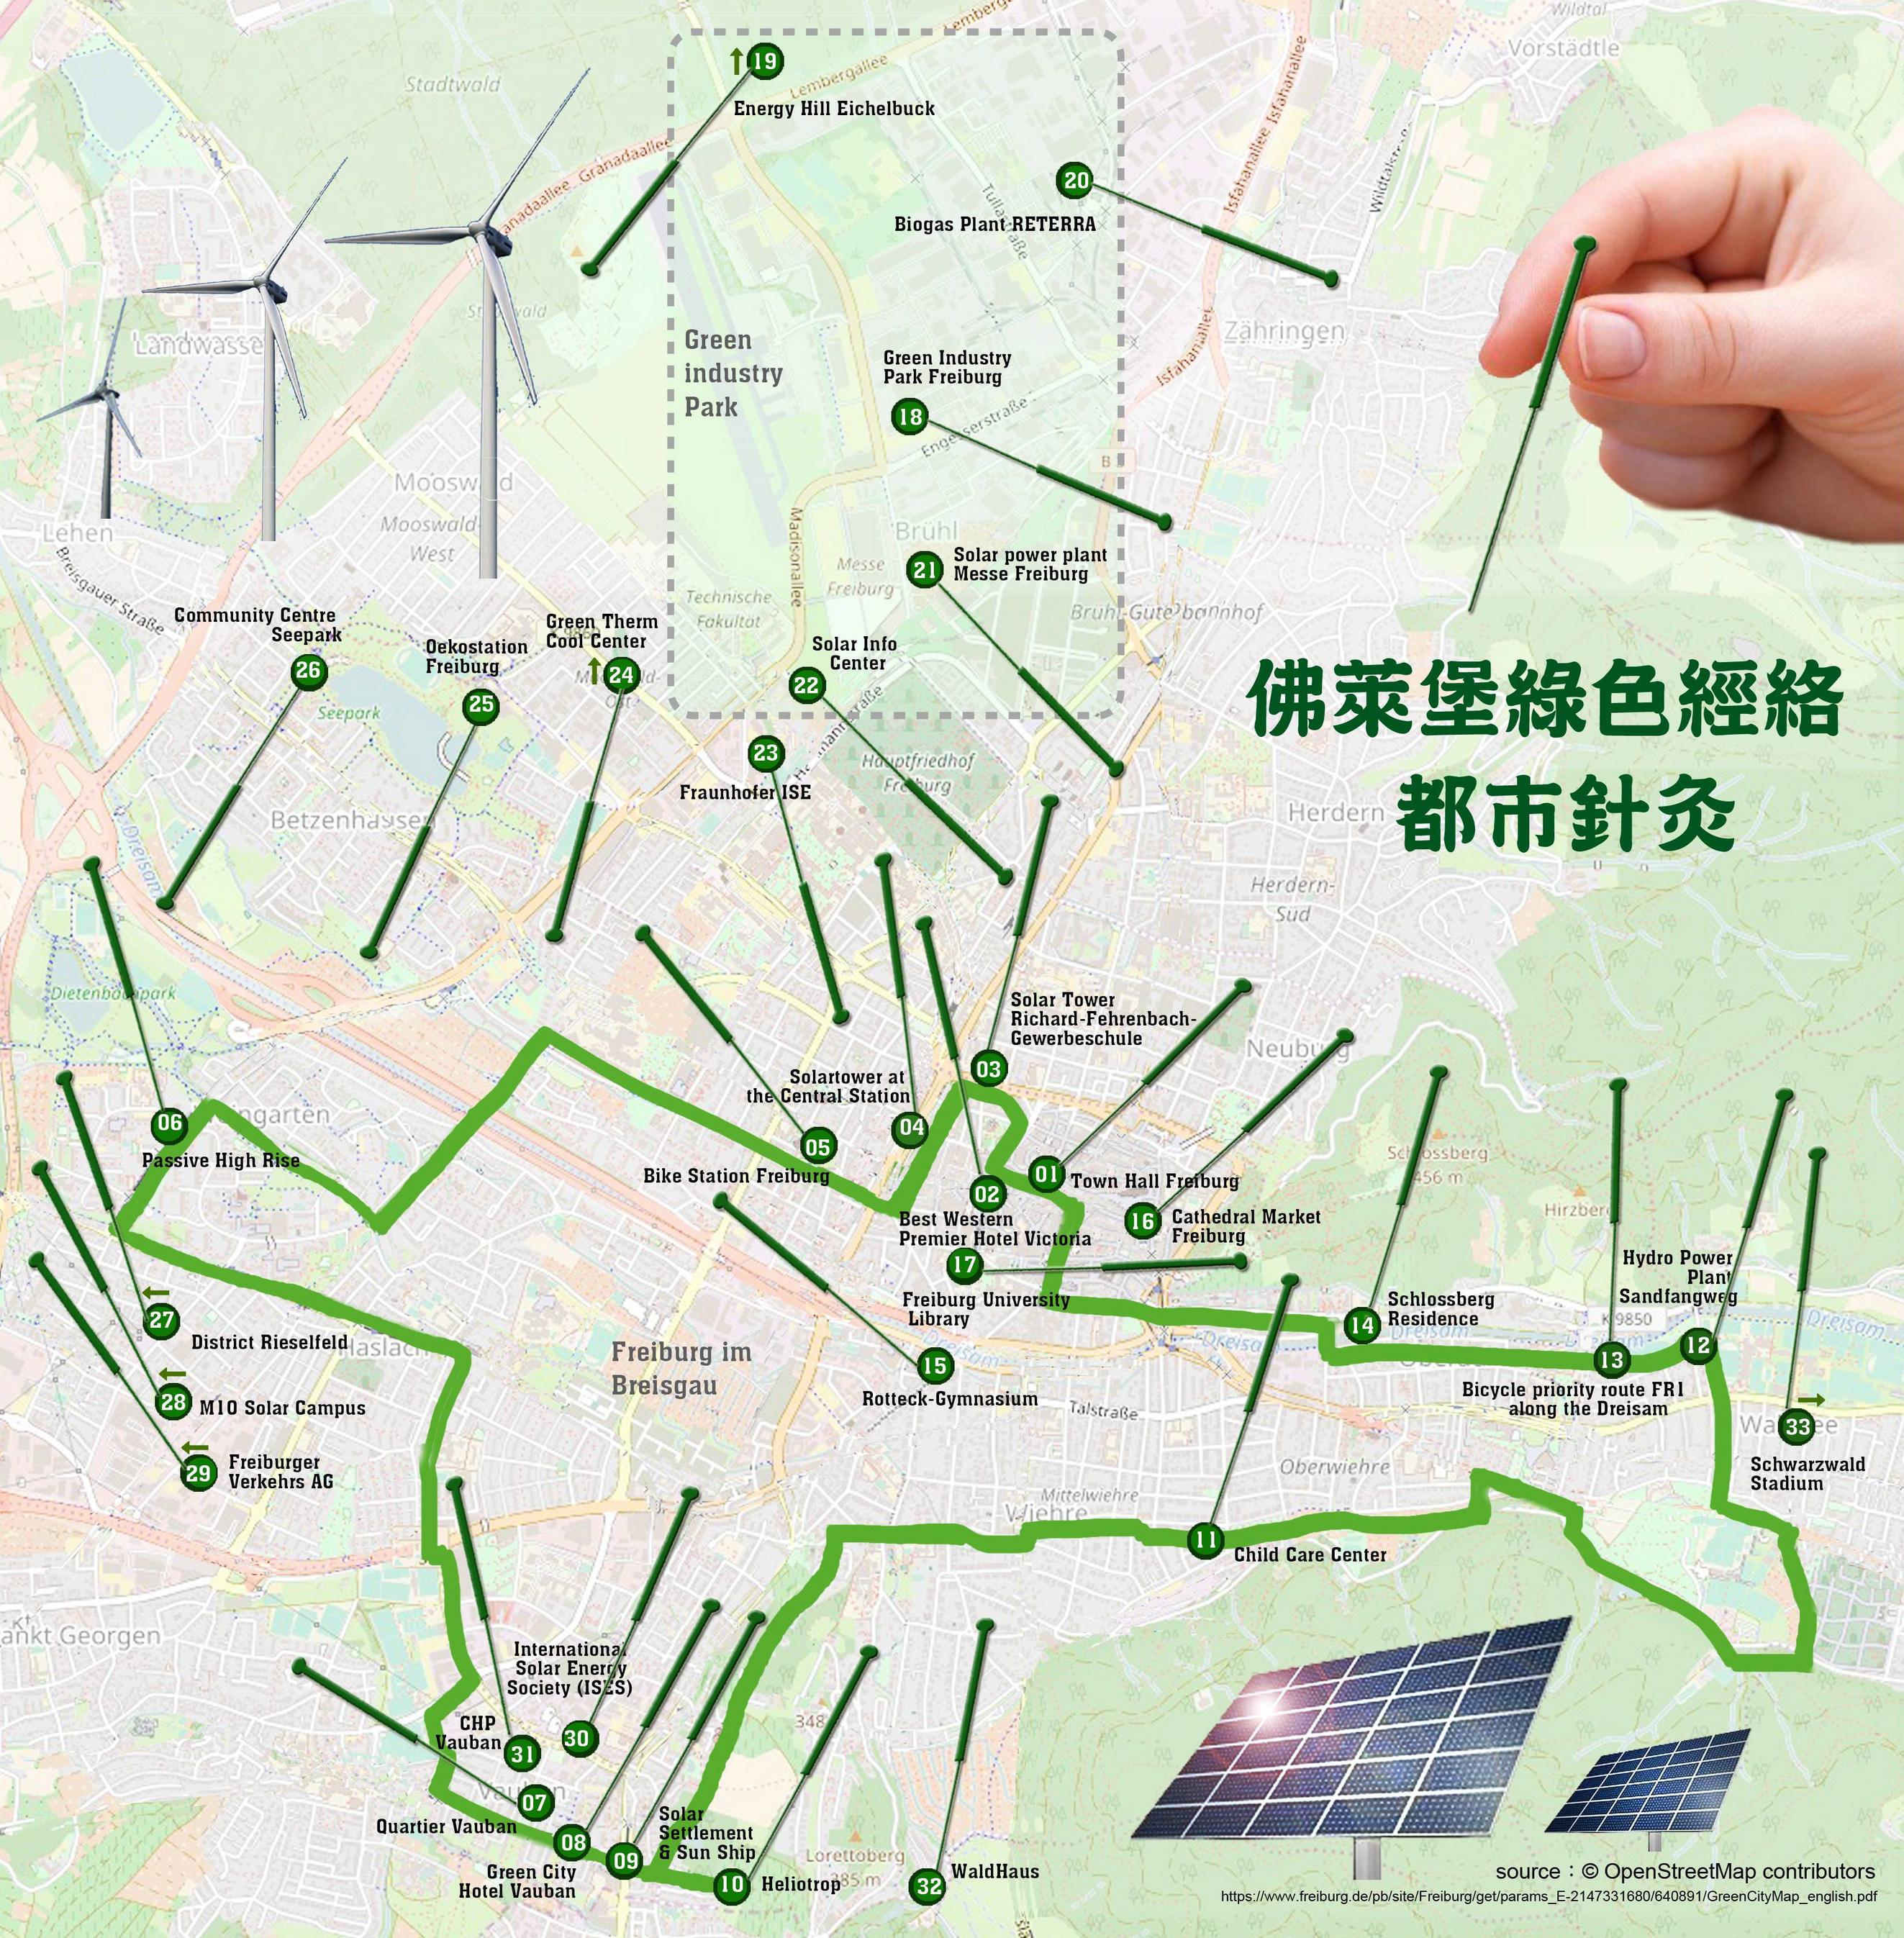 佛萊堡的綠色城市地圖與都市針灸法相互呼應，綠色經絡清晰可見，33個綠色穴位亮點分布在城巿的任督二脈